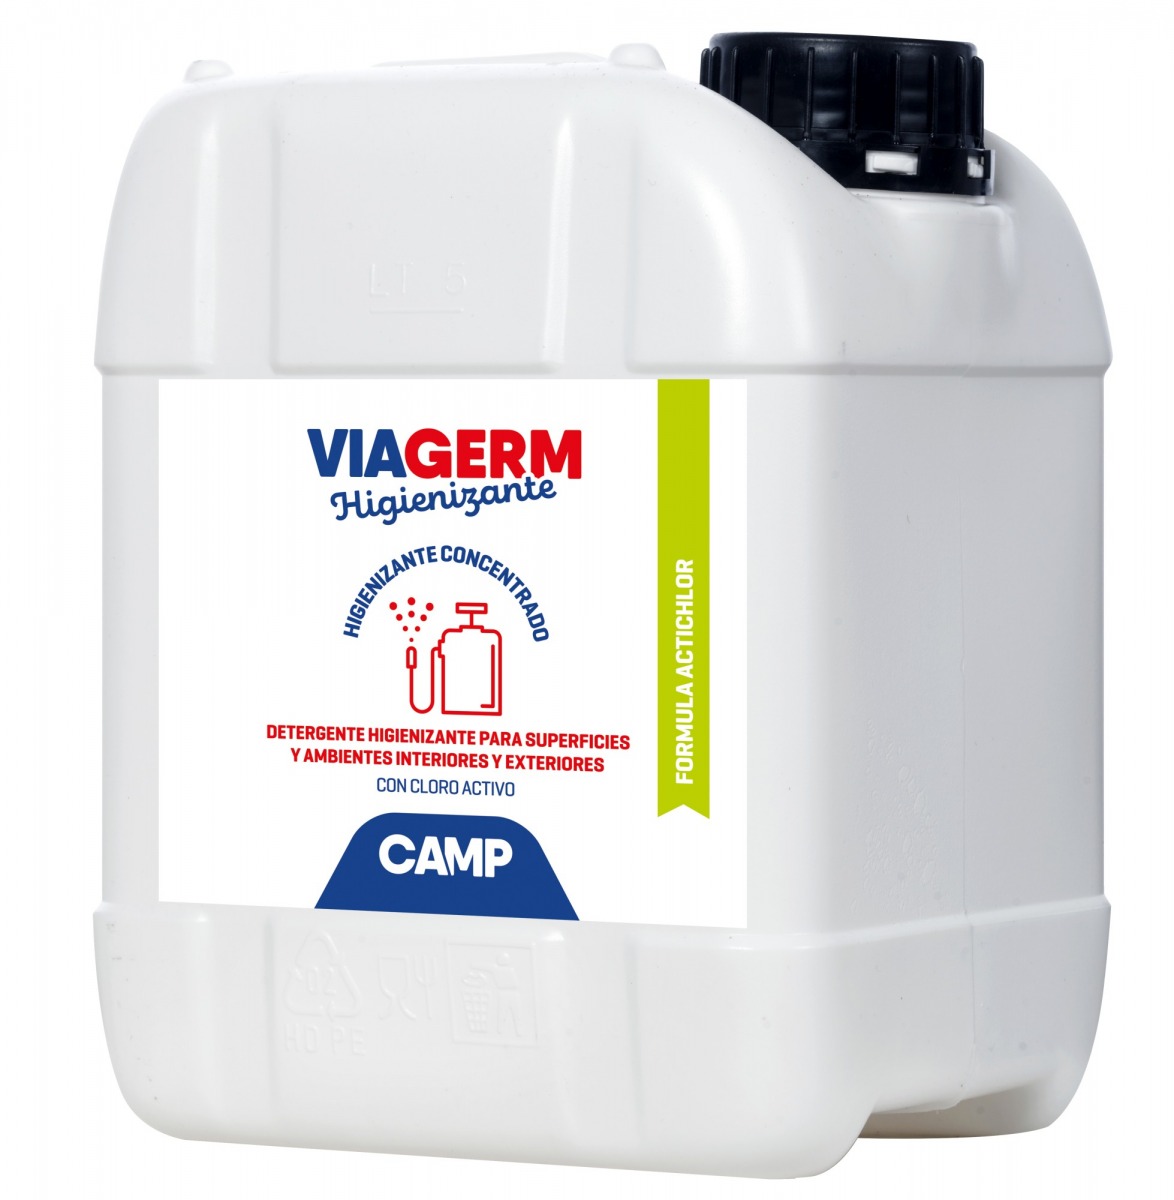 Detergente higienizante concentrado con cloro activo para superficies Viagerm Actichlor CAM-3032-005 | QUÍMICOS